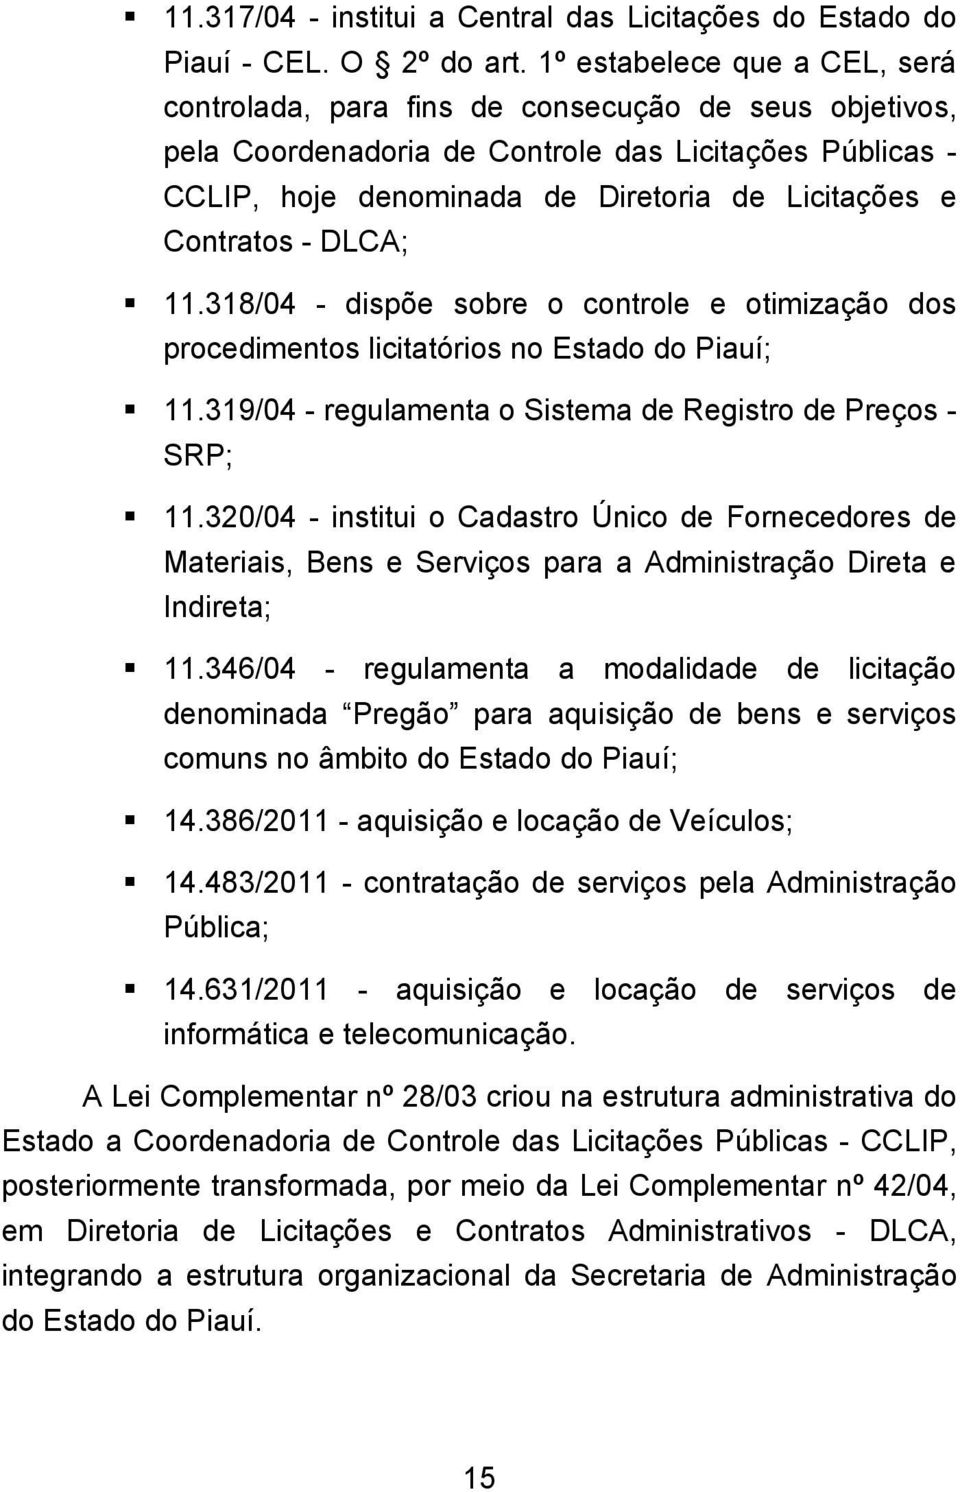 Contratos - DLCA; 11.318/04 - dispõe sobre o controle e otimização dos procedimentos licitatórios no Estado do Piauí; 11.319/04 - regulamenta o Sistema de Registro de Preços - SRP; 11.